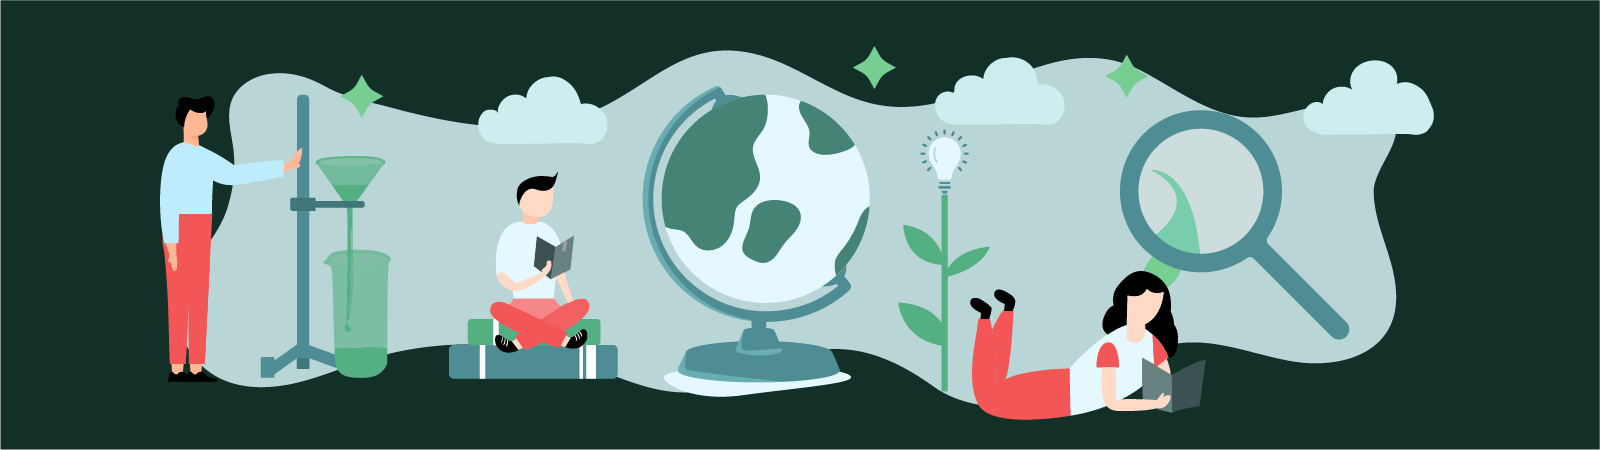 Ilustracija globusa, rastlin, eksperimenta, raziskav in učenja v oblačku.